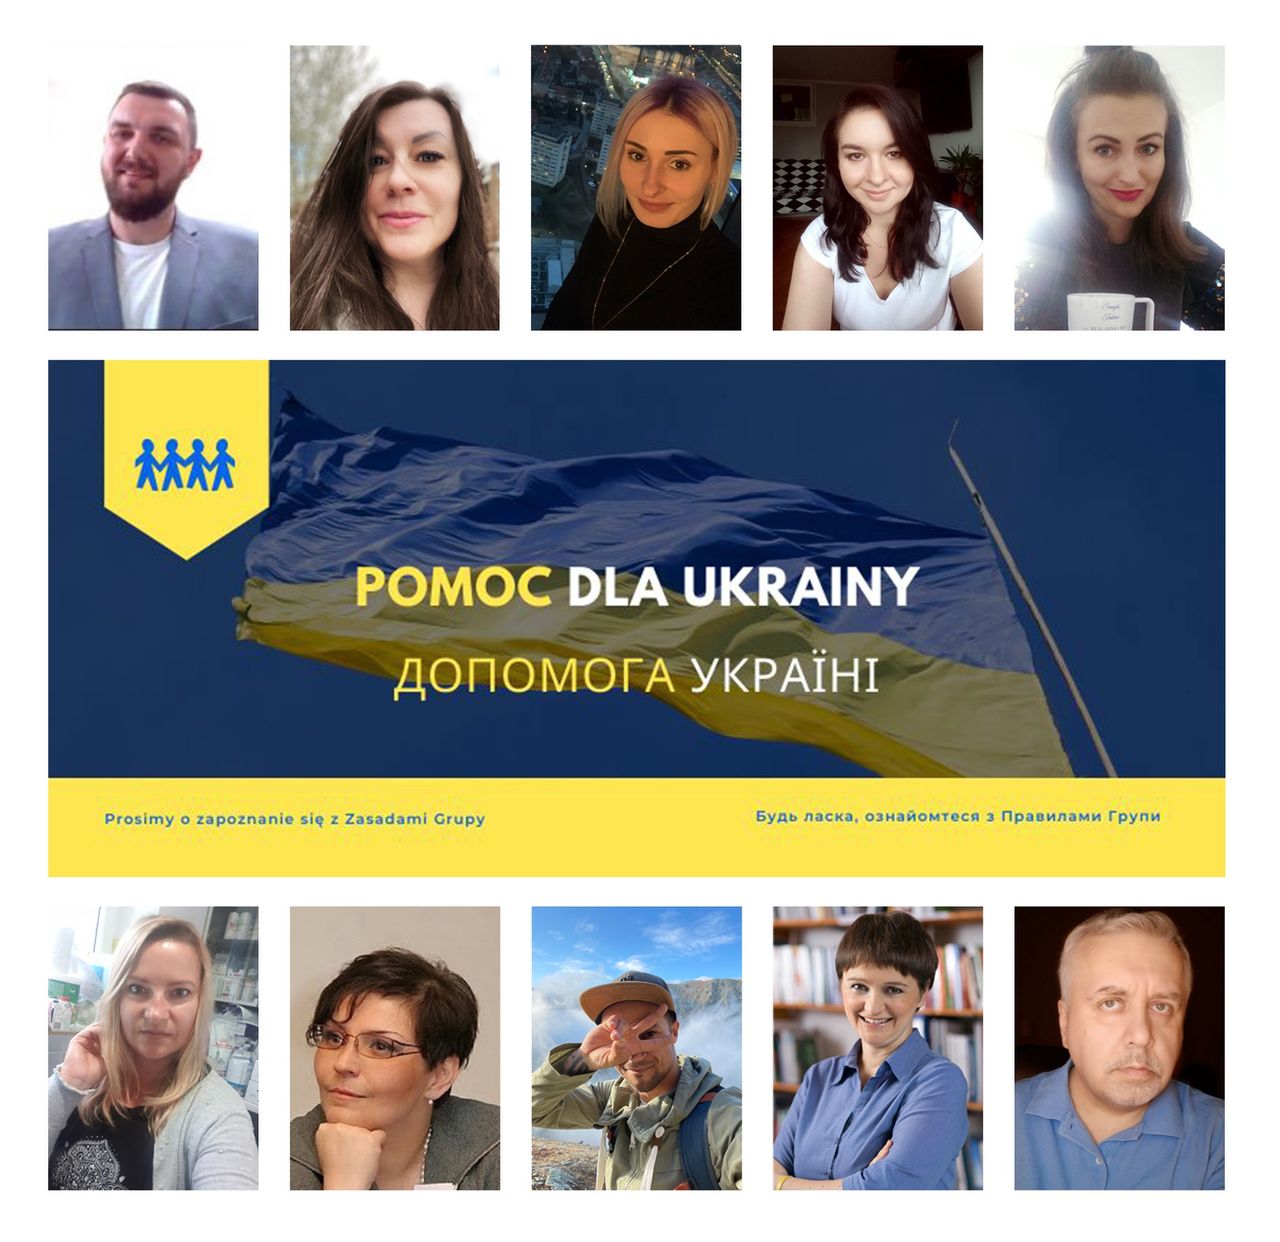 Administratorzy i moderatorzy grupy "Pomoc dla Ukrainy"